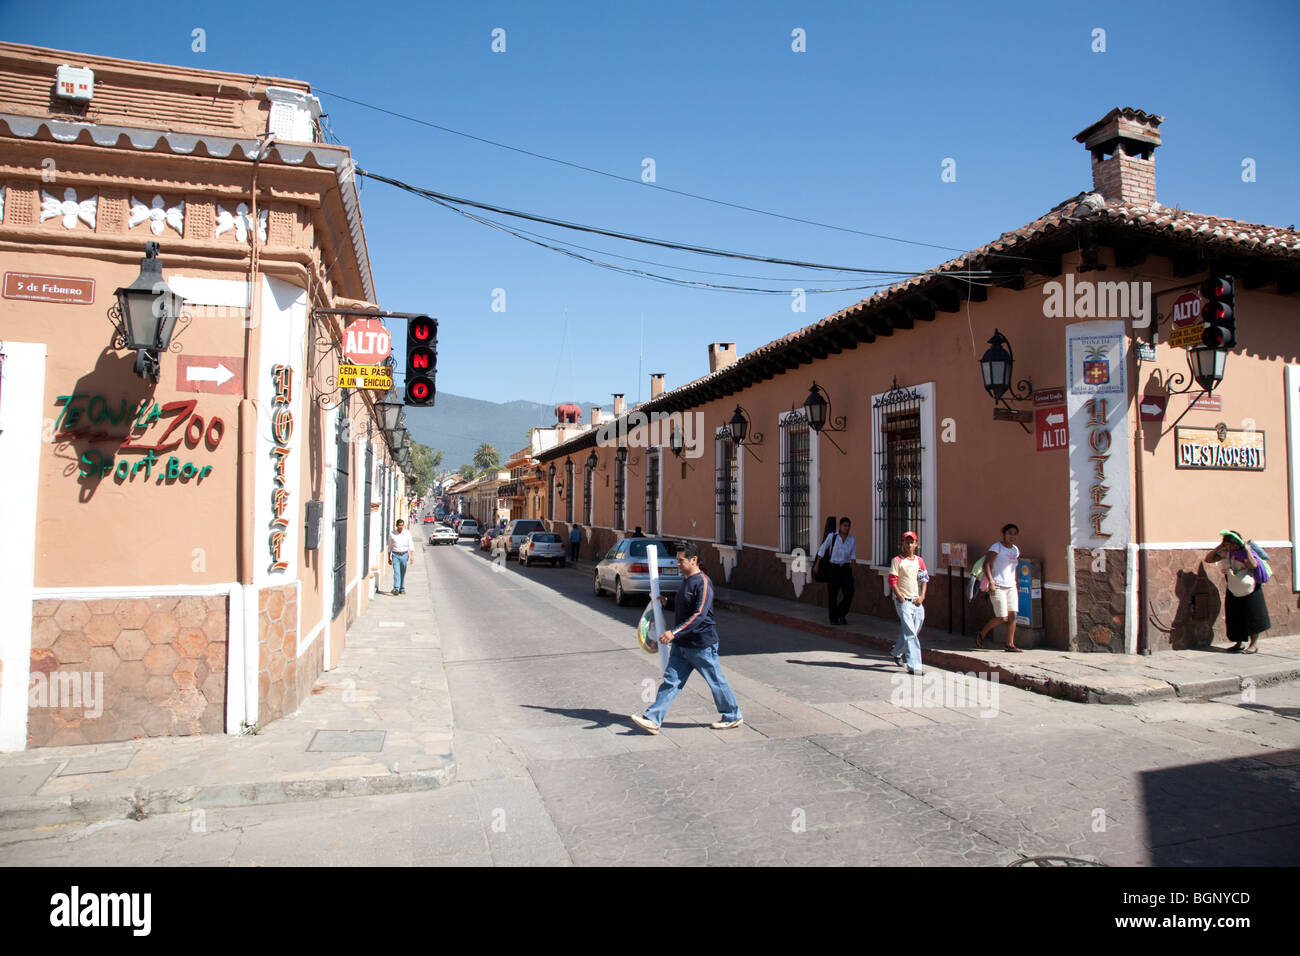 San Cristóbal de las Casas, Chiapas Mexico. Stock Photo